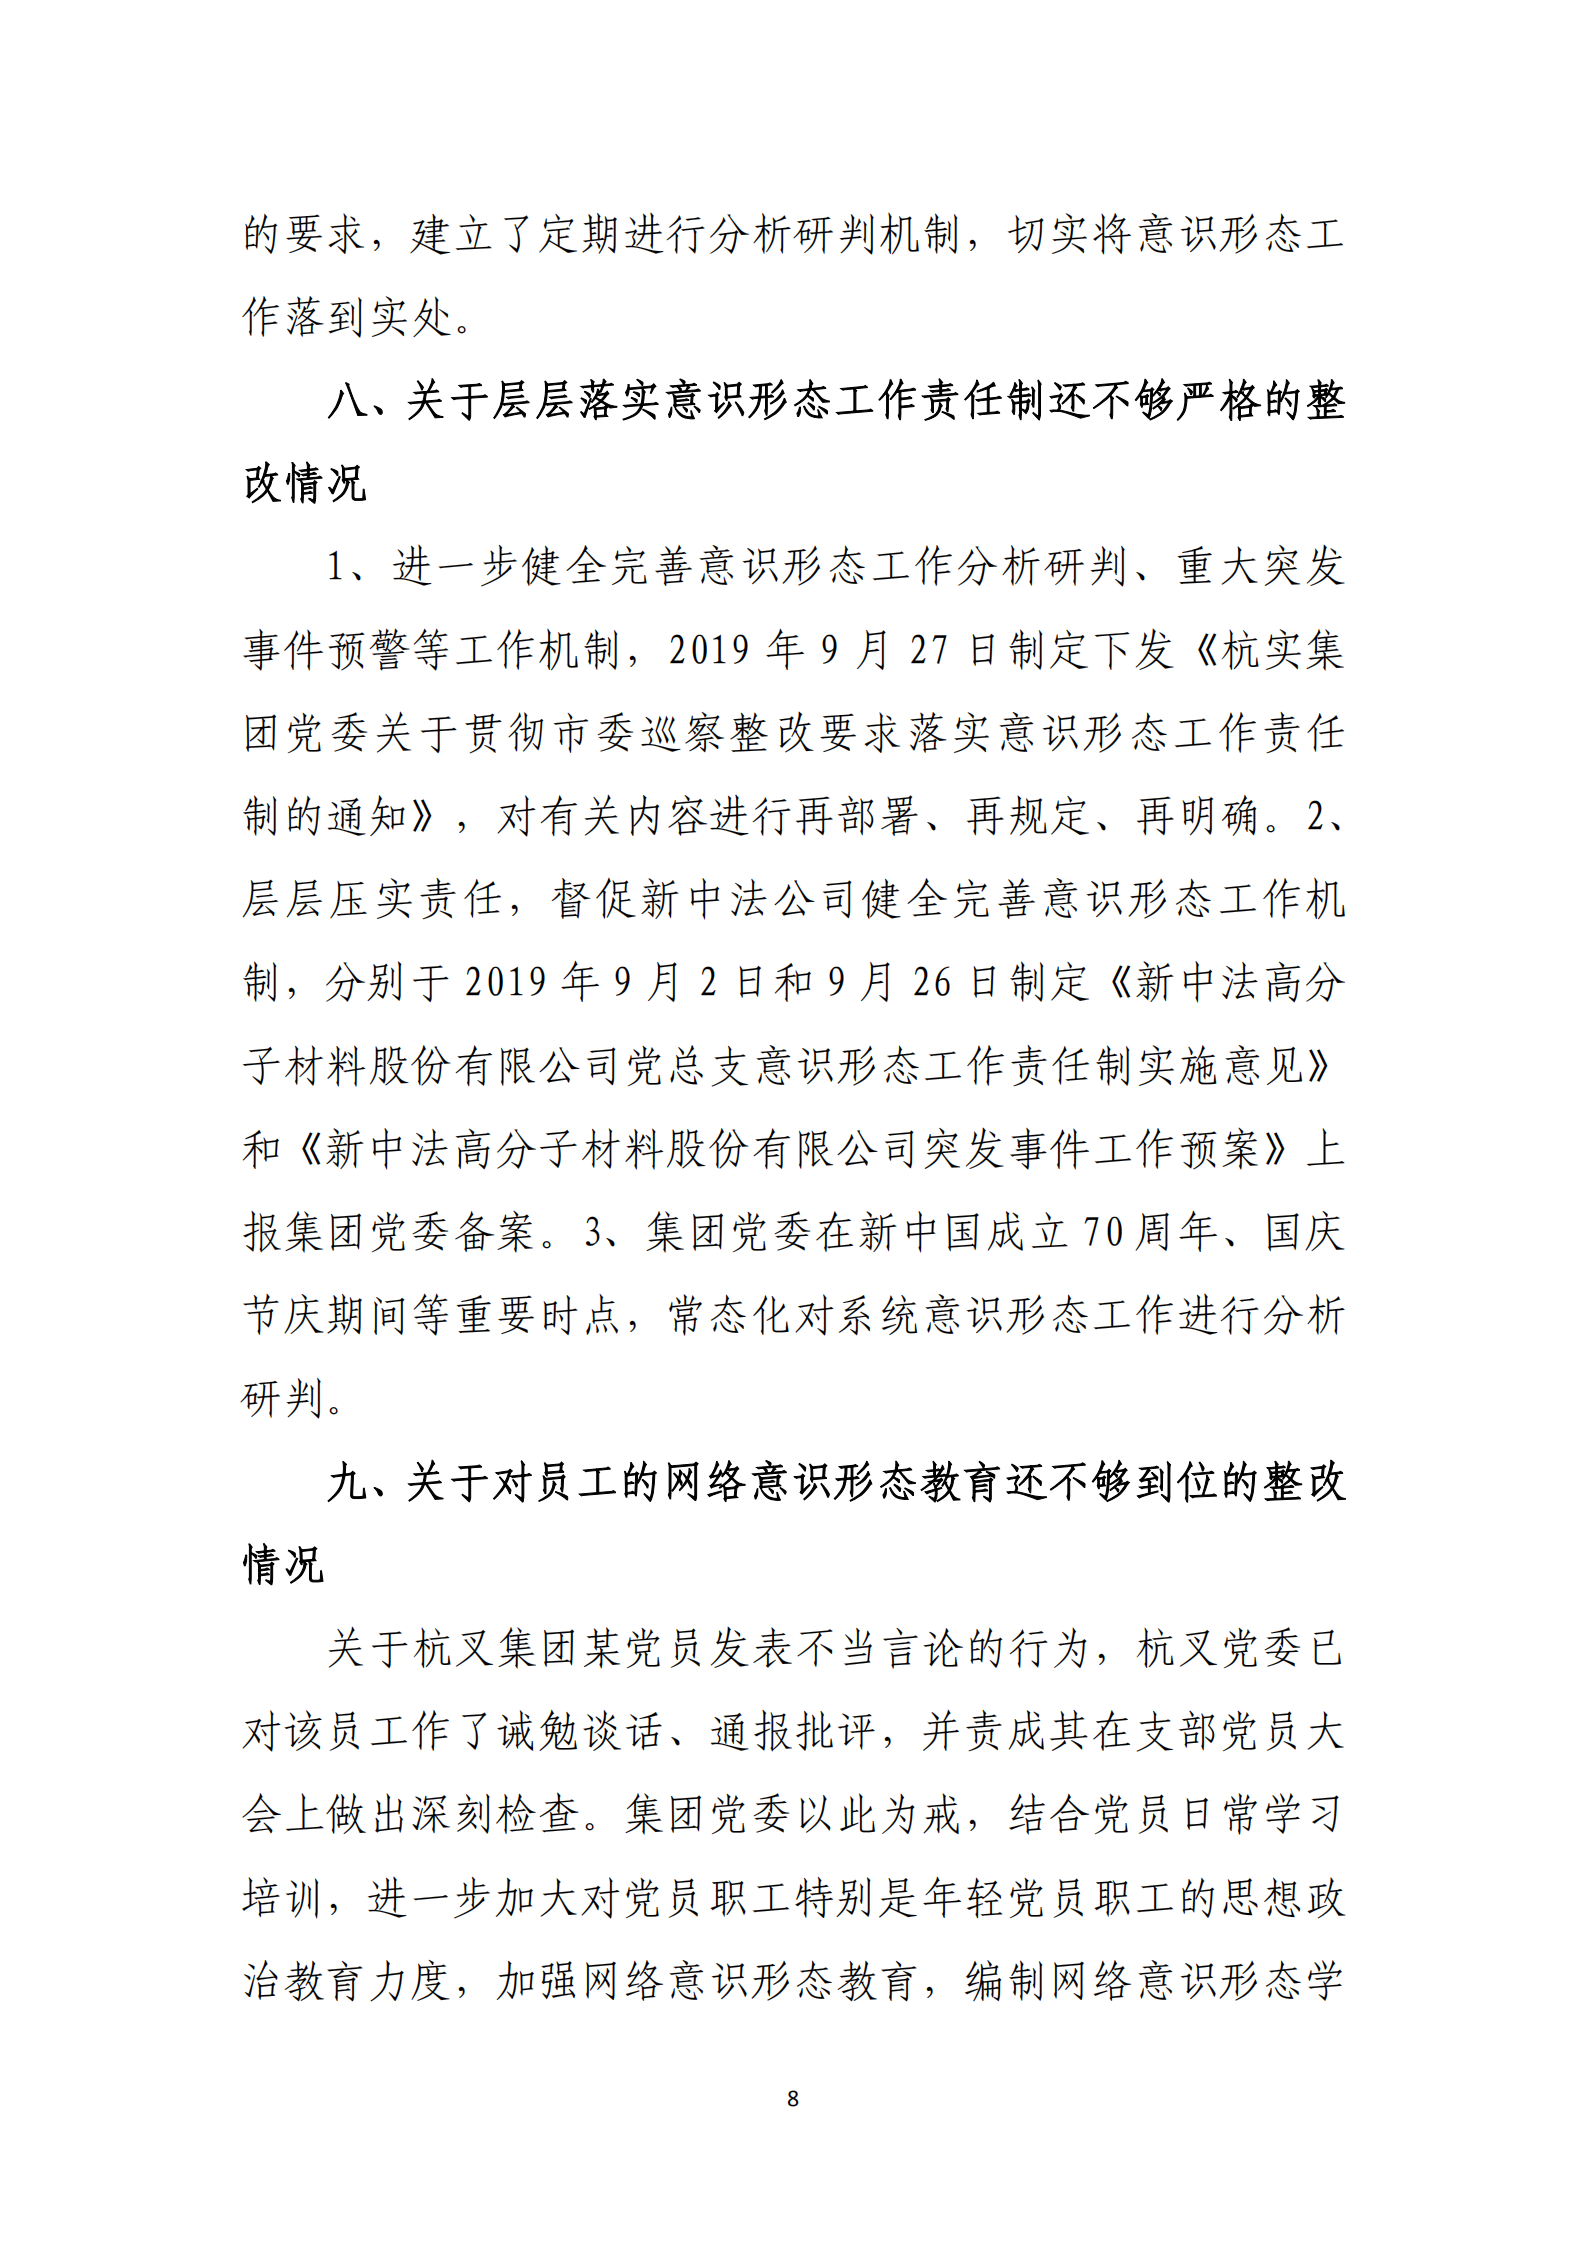 博乐体育网页【中国】有限公司党委关于巡察整改情况的通报_07.png